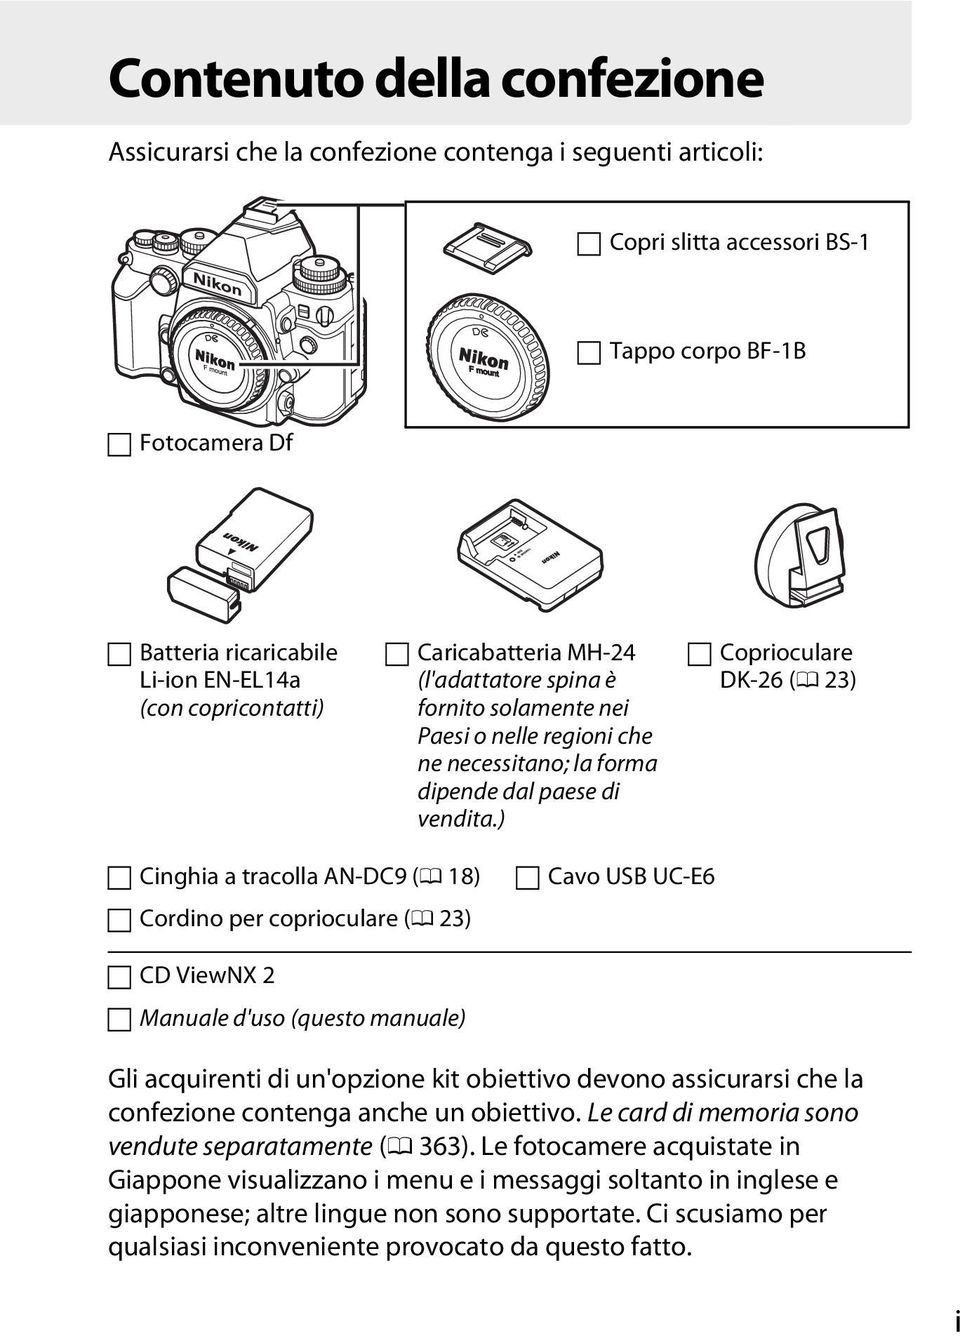 ) Coprioculare DK-26 (0 23) Cinghia a tracolla AN-DC9 (0 18) Cordino per coprioculare (0 23) Cavo USB UC-E6 CD ViewNX 2 Manuale d'uso (questo manuale) Gli acquirenti di un'opzione kit obiettivo